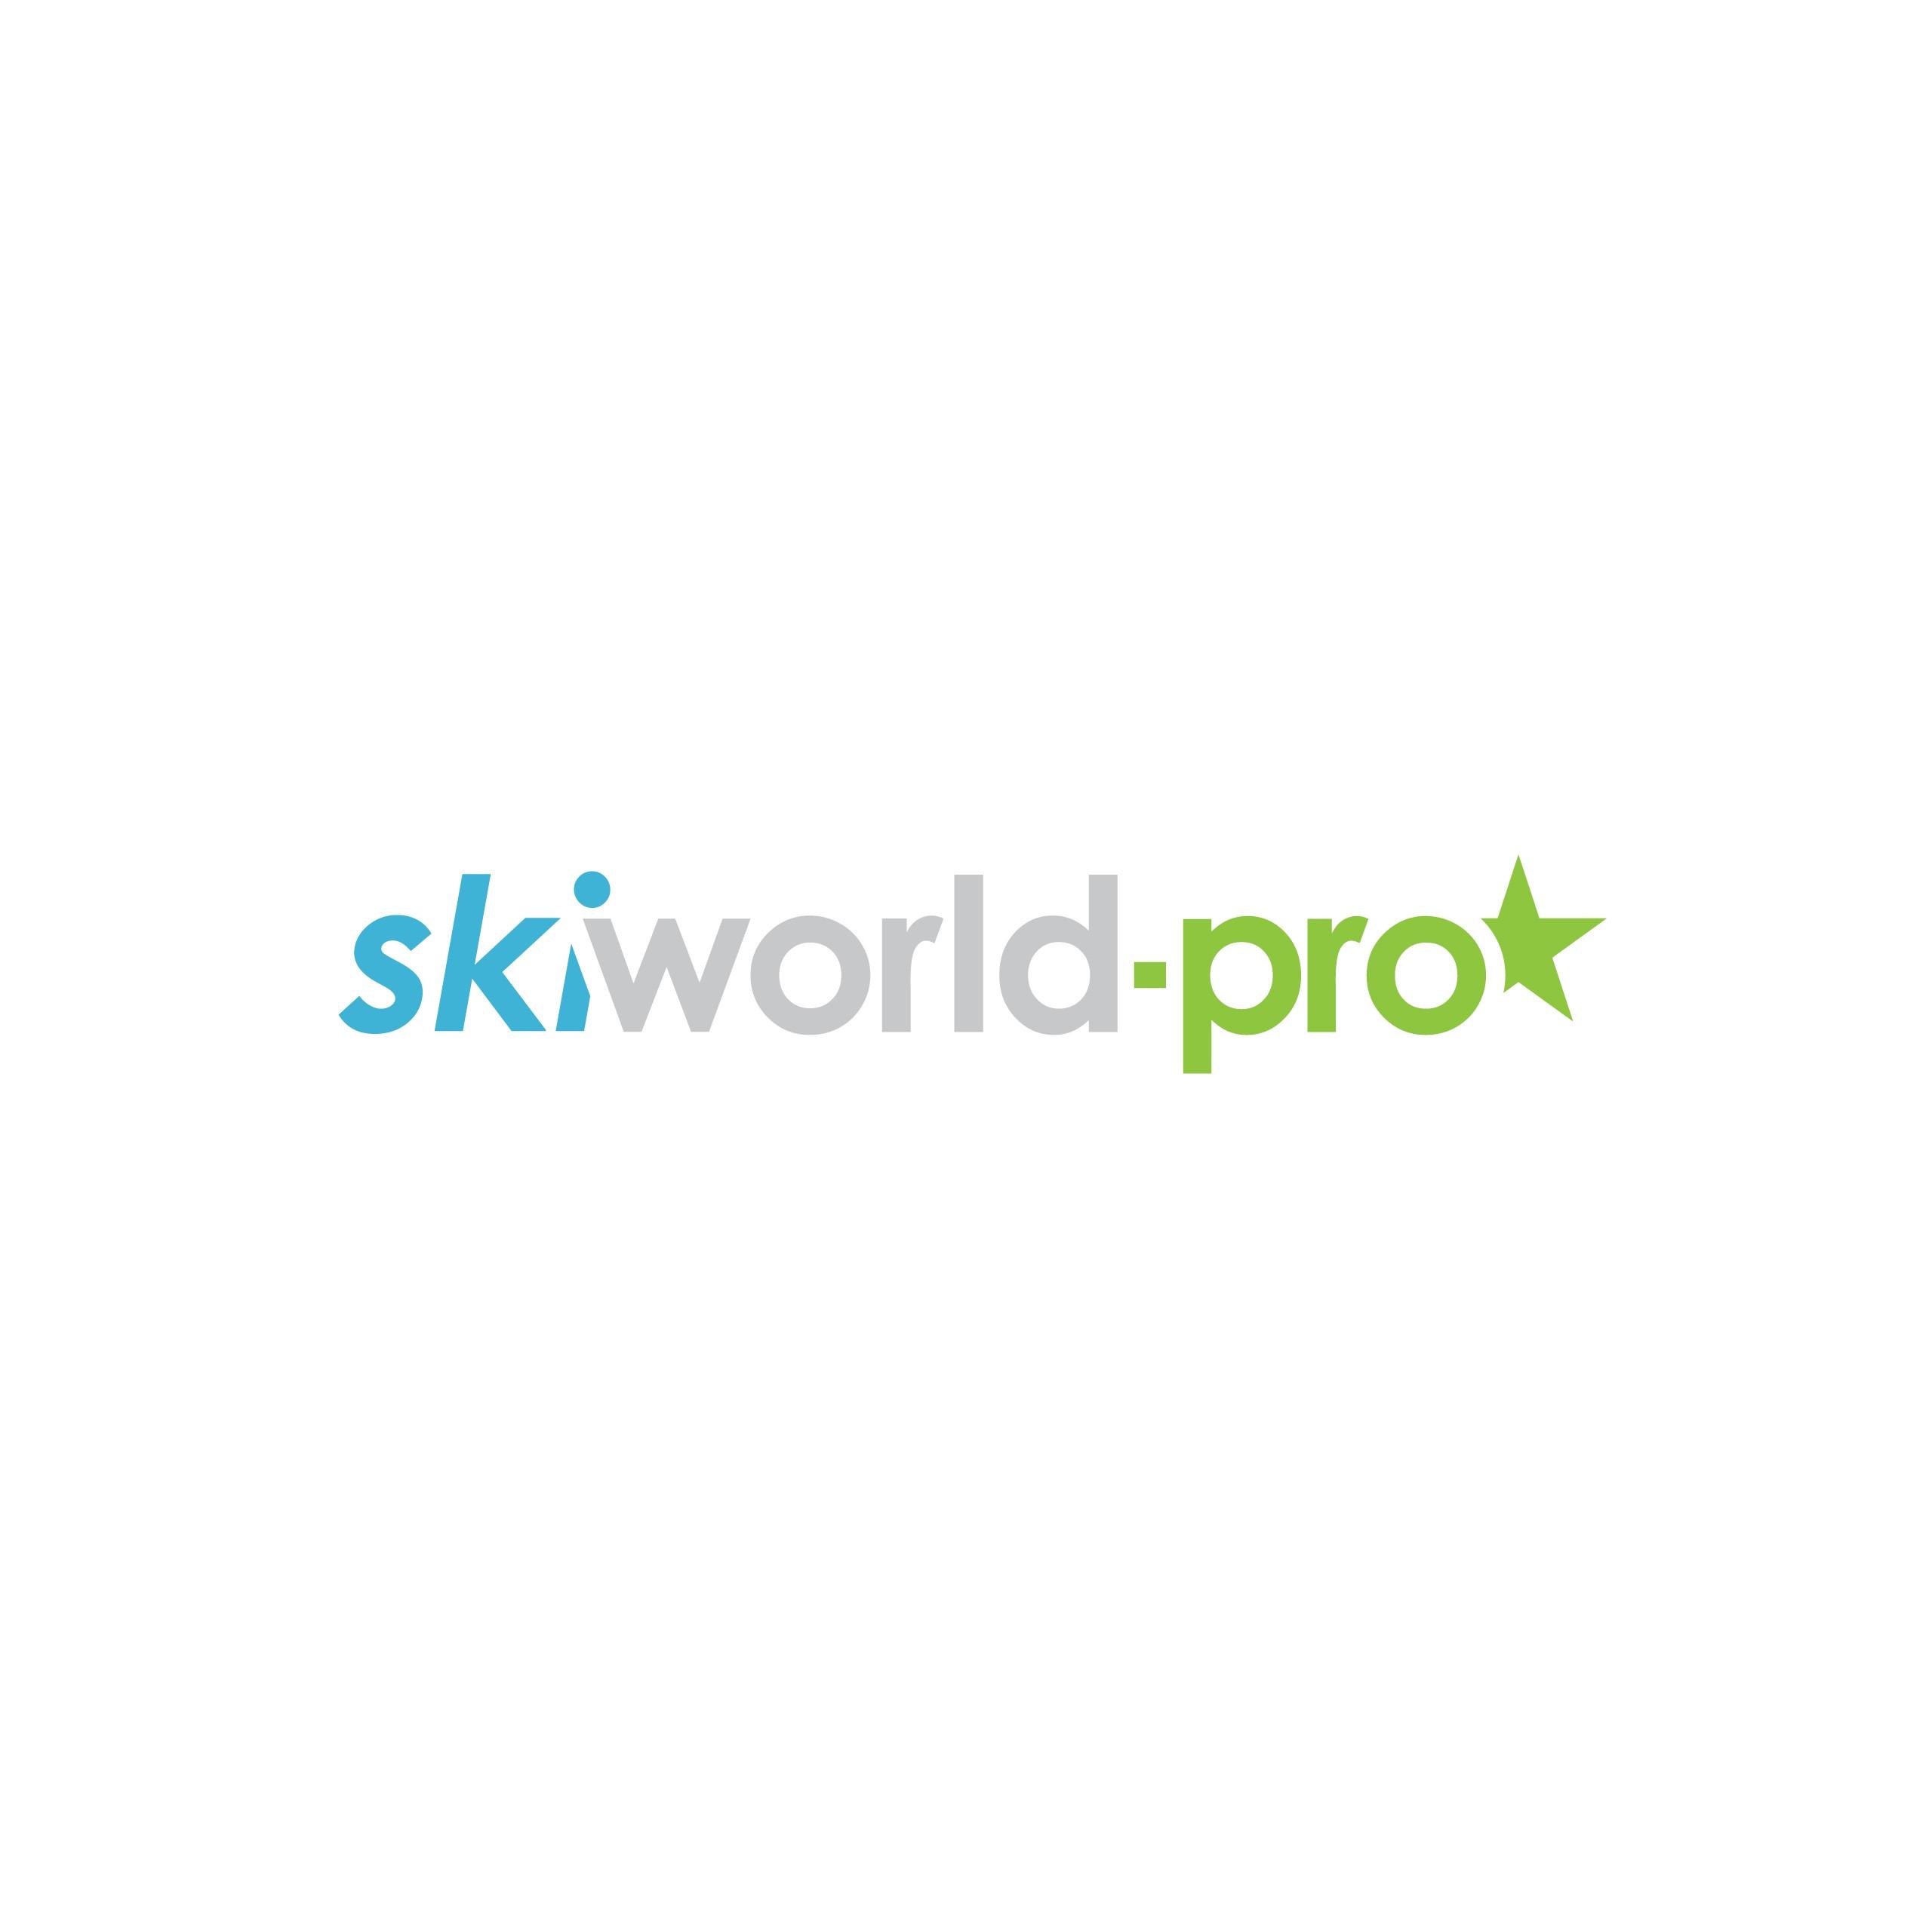 Skiworld-Pro GmbH Logo